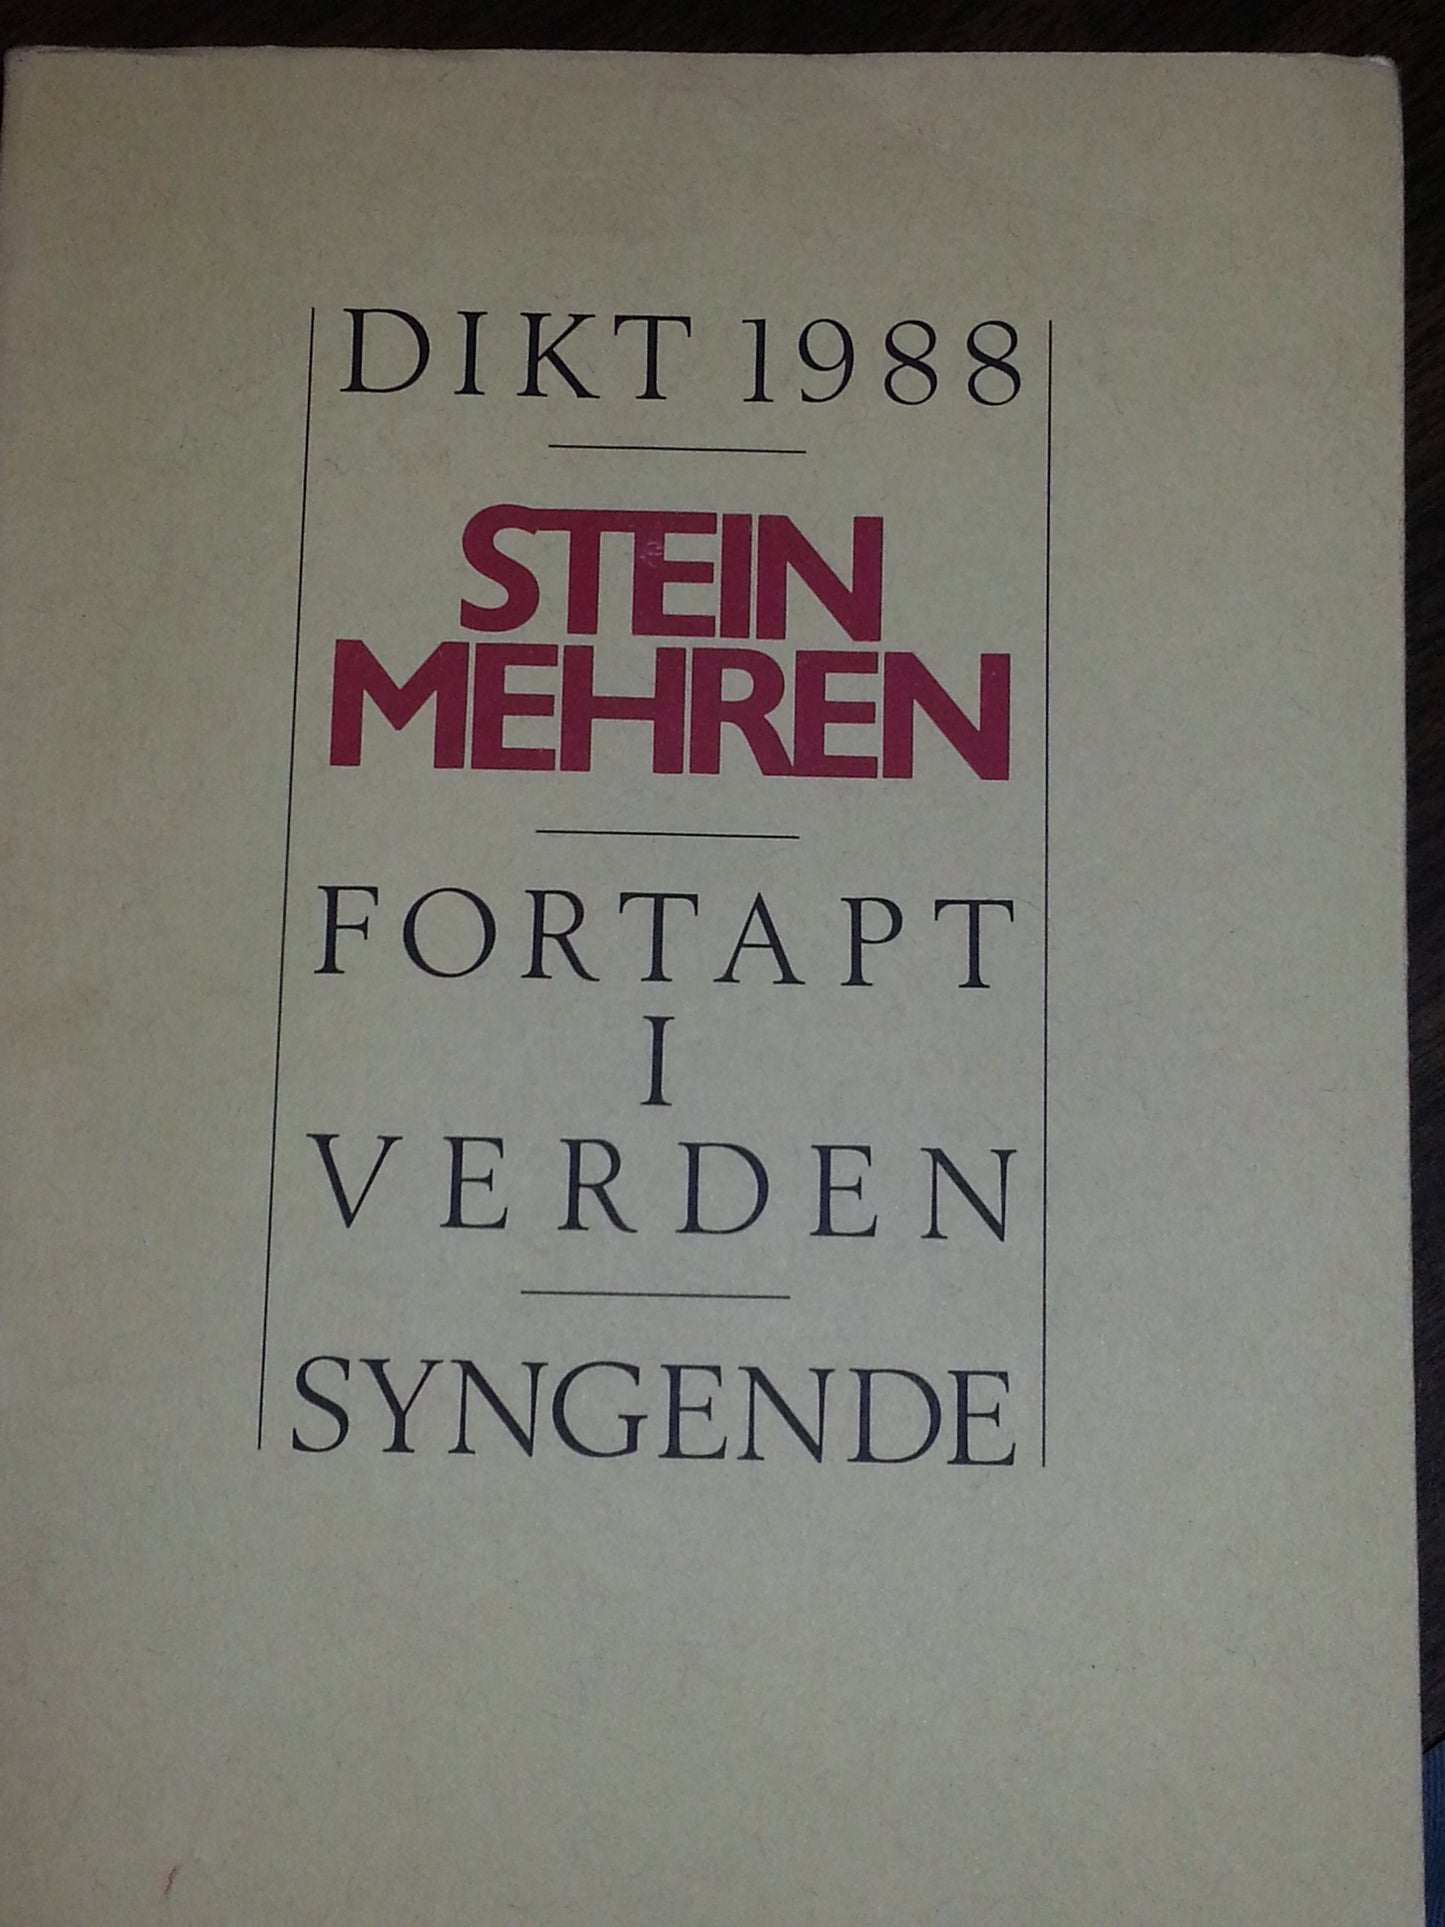 Fortapt i verden. Syngende: Dikt 1988 (Norwegian Edition)